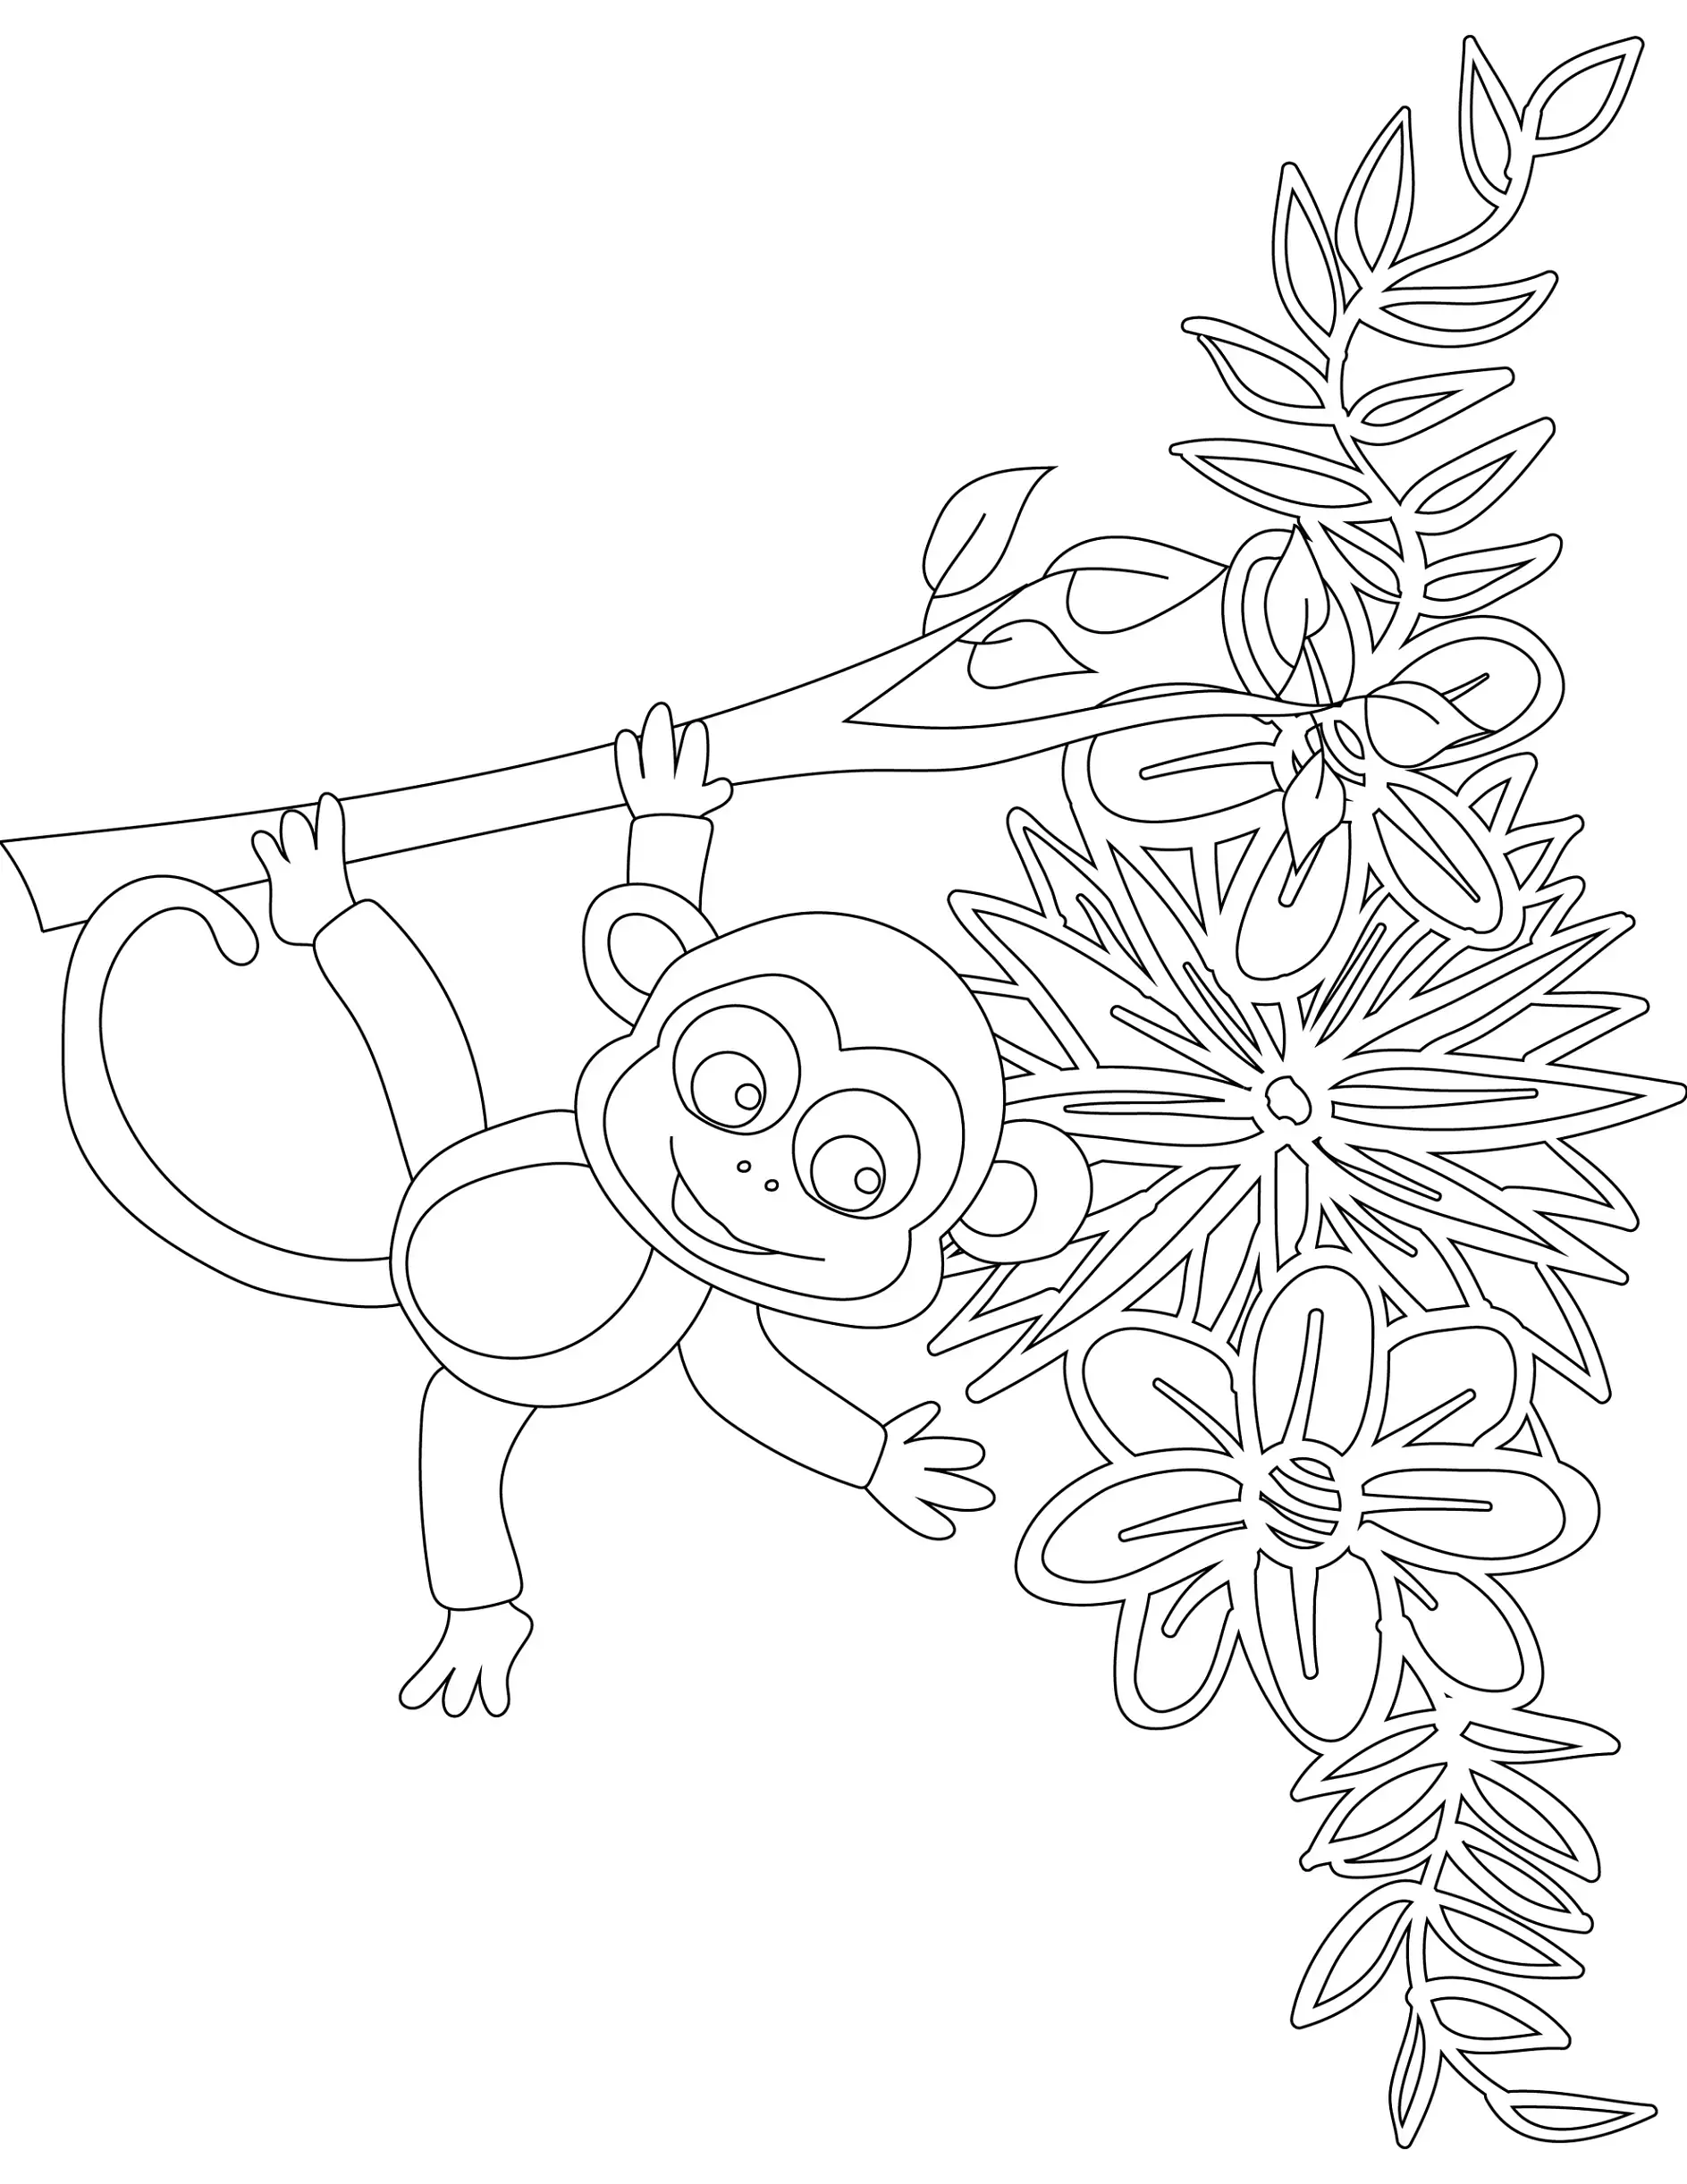 Ausmalbild Affe hängt an einem Ast mit Blättern und Blumen